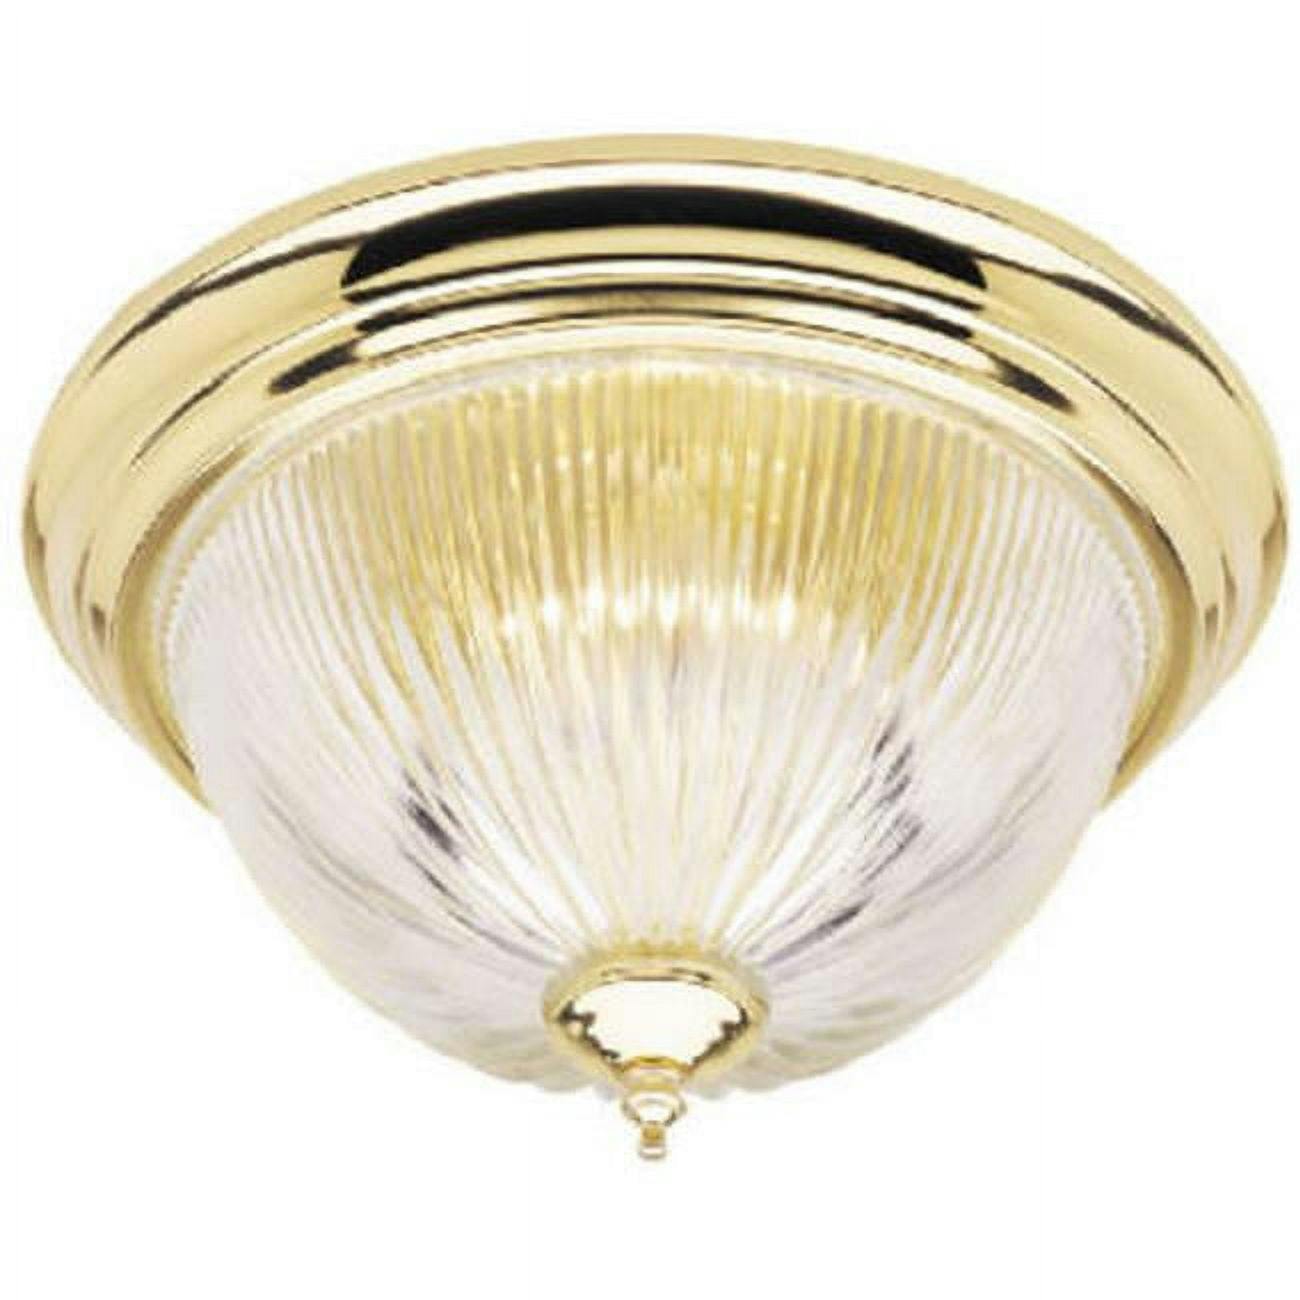 Elegant Brass and Glass 11" Flush Mount Ceiling Light